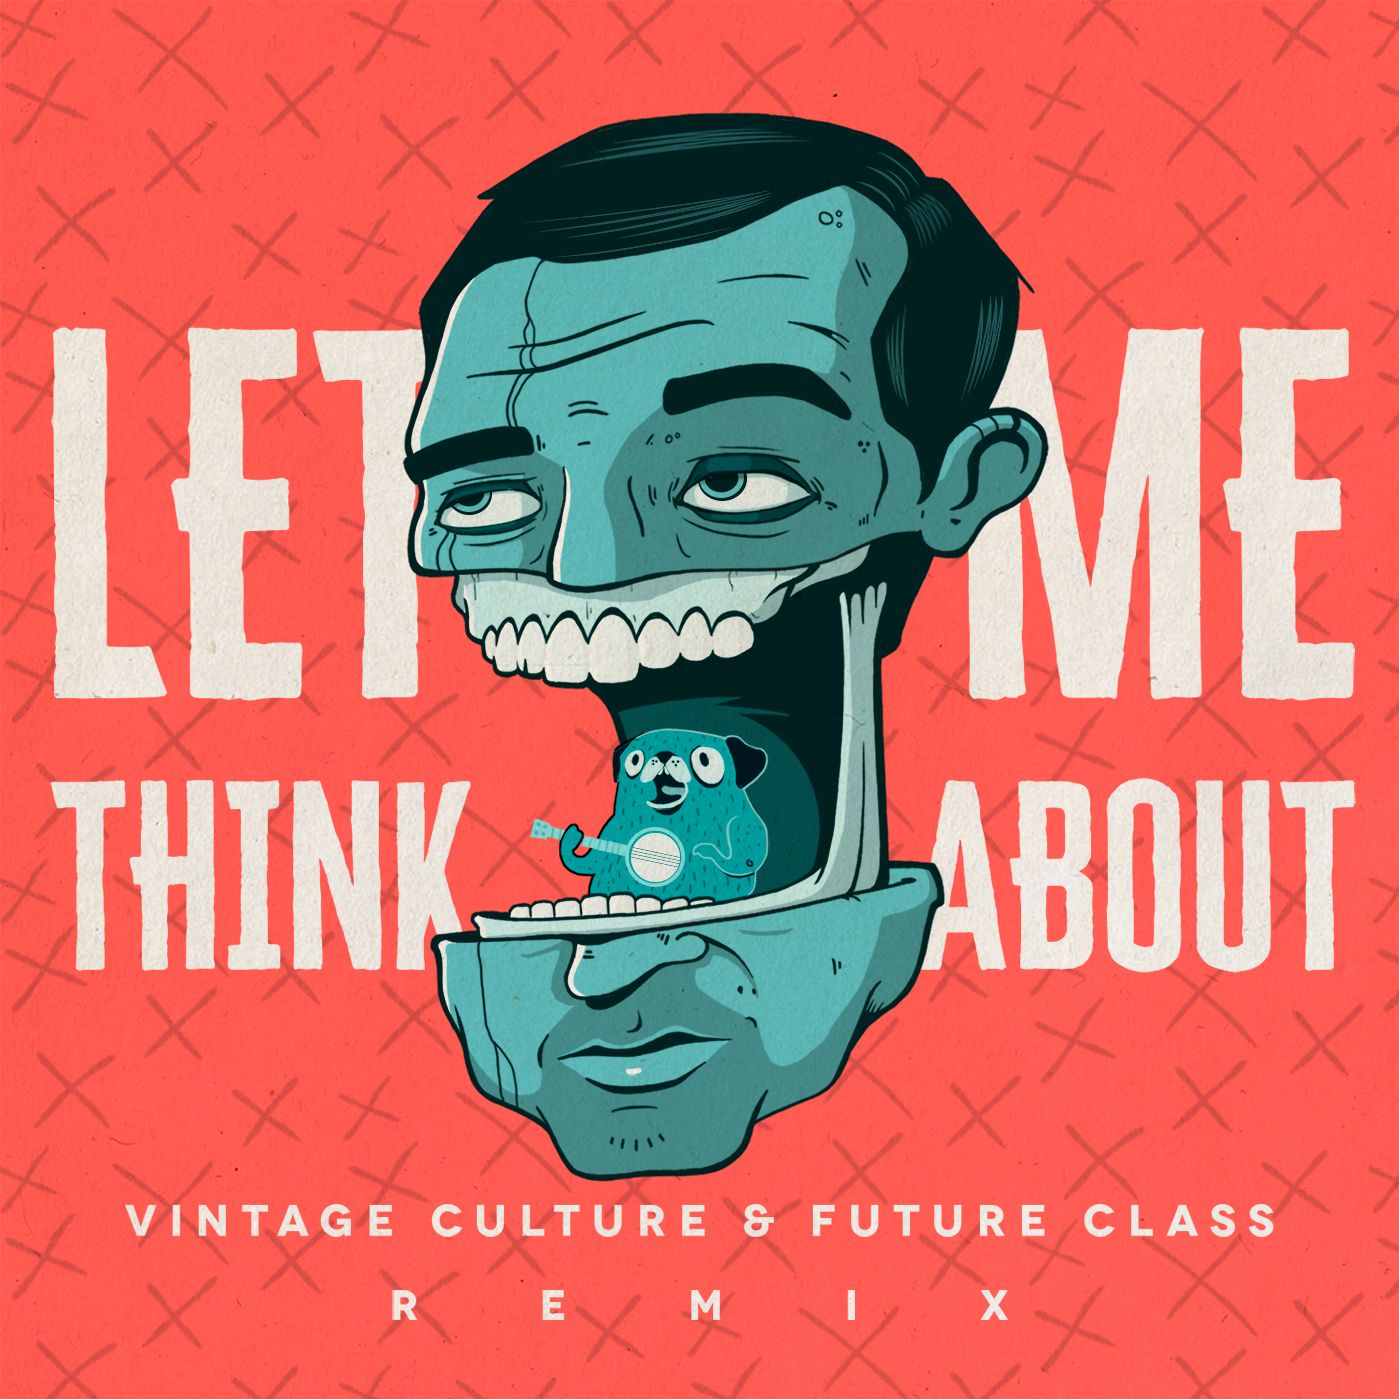 Deskargatu Vintage Culture & Future Class - Let Me Think About